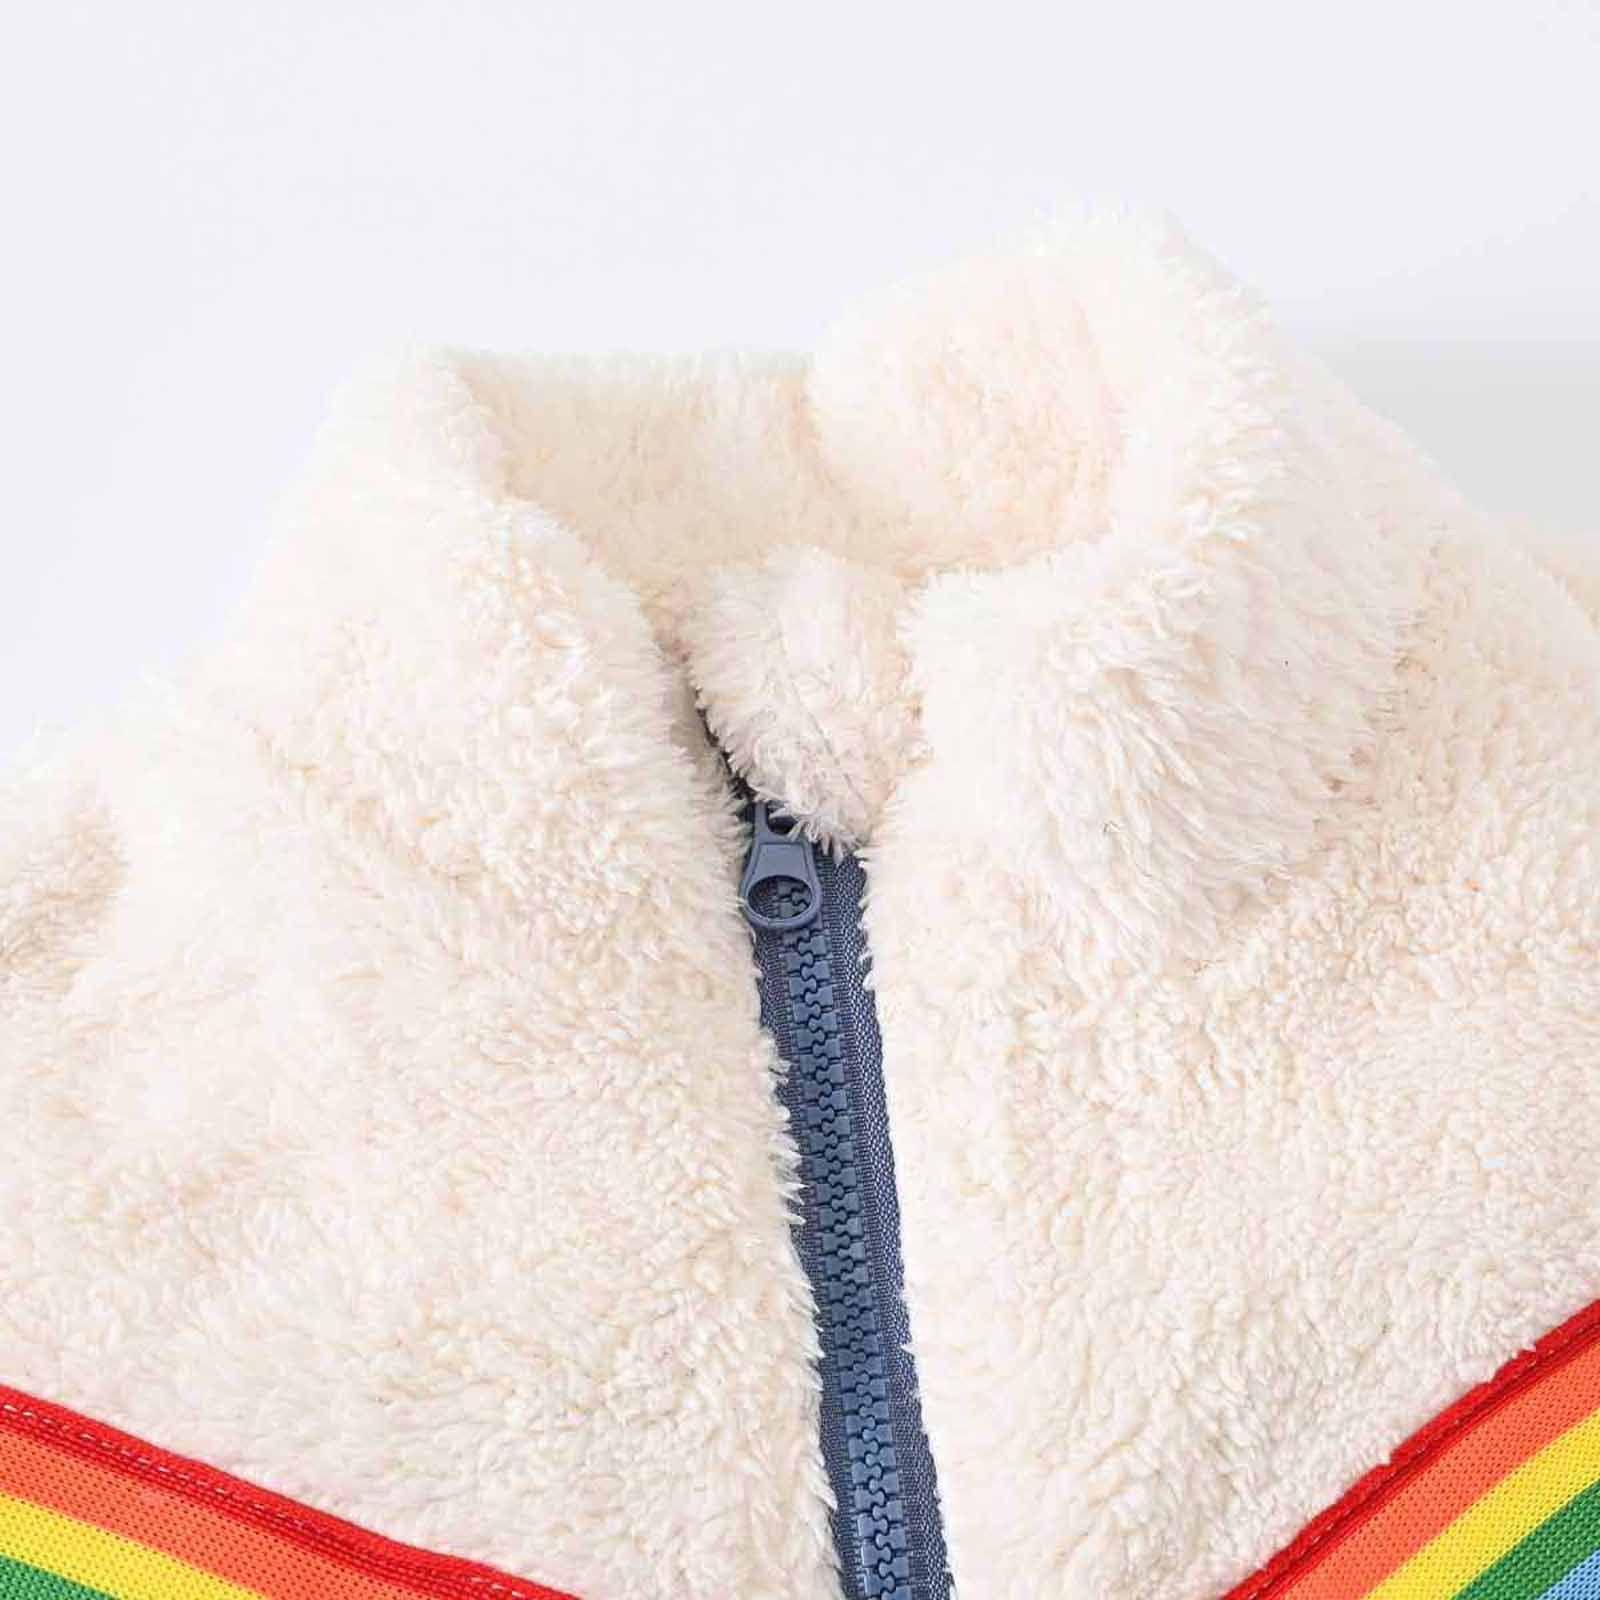 YYDGH Girls Zipper Jacket Fuzzy Sweatshirt Long Sleeve Casual Cozy Fleece Sherpa Outwear Coat Full-Zip Rainbow Jackets(Blue,7-8 Years) - image 3 of 8